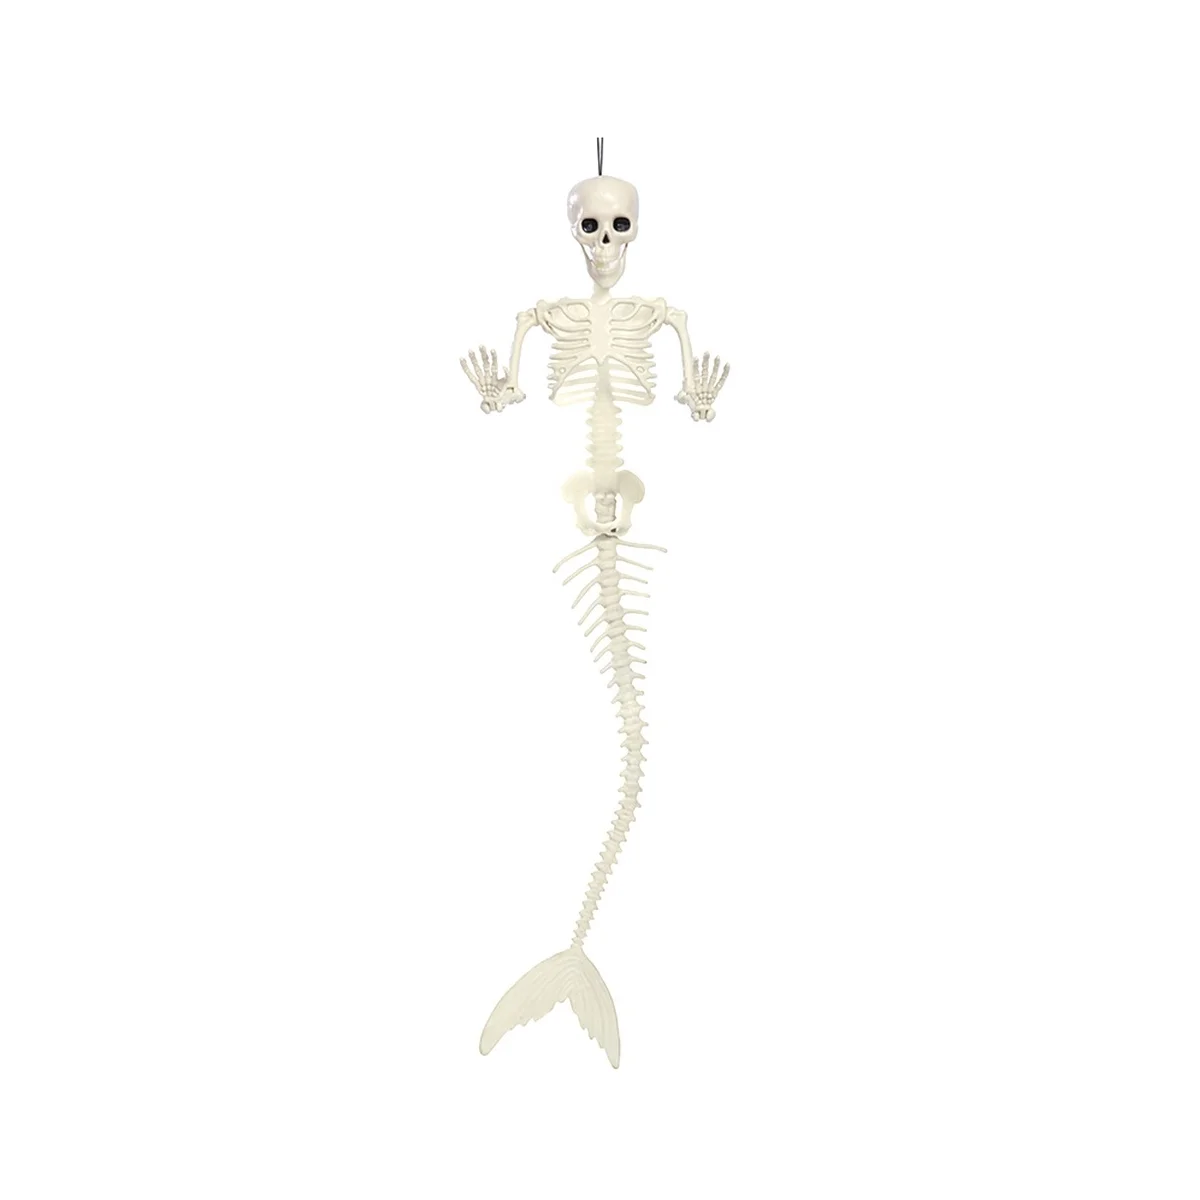 Скелет русалки на Хэллоуин, уличные украшения, страшный скелет на Хэллоуин в натуральную величину для дома с привидениями на кладбище